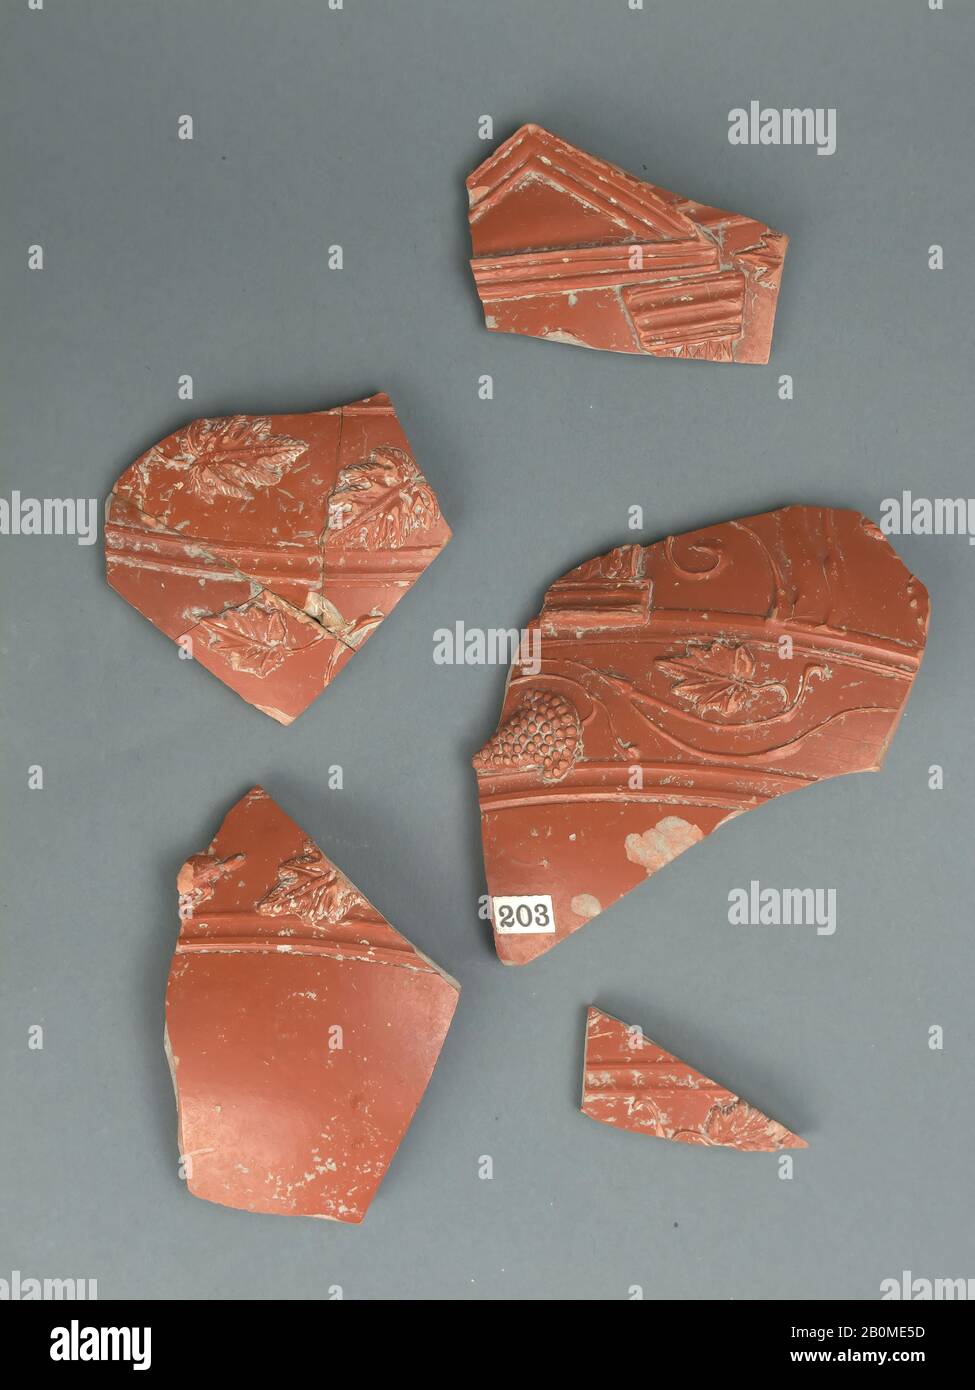 Vase fragments, Roman, Roman, Terracotta, .a: 4 3/16 × 3 11/16 × 3/8 in. (10.6 × 9.4 × 0.9 cm), .b: 3 11/16 × 2 1/2 × 5/16 in. (9.4 × 6.3 × 0.9 cm), .c: 2 1/2 × 2 1/8 × 3/8 in. (6.3 × 5.4 × 1 cm), .d: 1 7/8 × 2 13/16 × 5/16 in. (4.8 × 7.2 × 0.8 cm), .f: 1 3/4 × 1 15/16 × 1/4 in. (4.5 × 5 × 0.6 cm), .g: 1 1/16 × 2 1/4 × 1/4 in. (2.7 × 5.7 × 0.7 cm), .h: 1 1/4 × 1 15/16 × 1/4 in. (3.2 × 4.9 × 0.6 cm), .i: 1 3/16 × 1 9/16 × 3/16 in. (3.1 × 4 × 0.5 cm), .j: 1 1/8 × 1 3/8 × 3/16 in. (2.9 × 3.6 × 0.4 cm), Vases Stock Photo